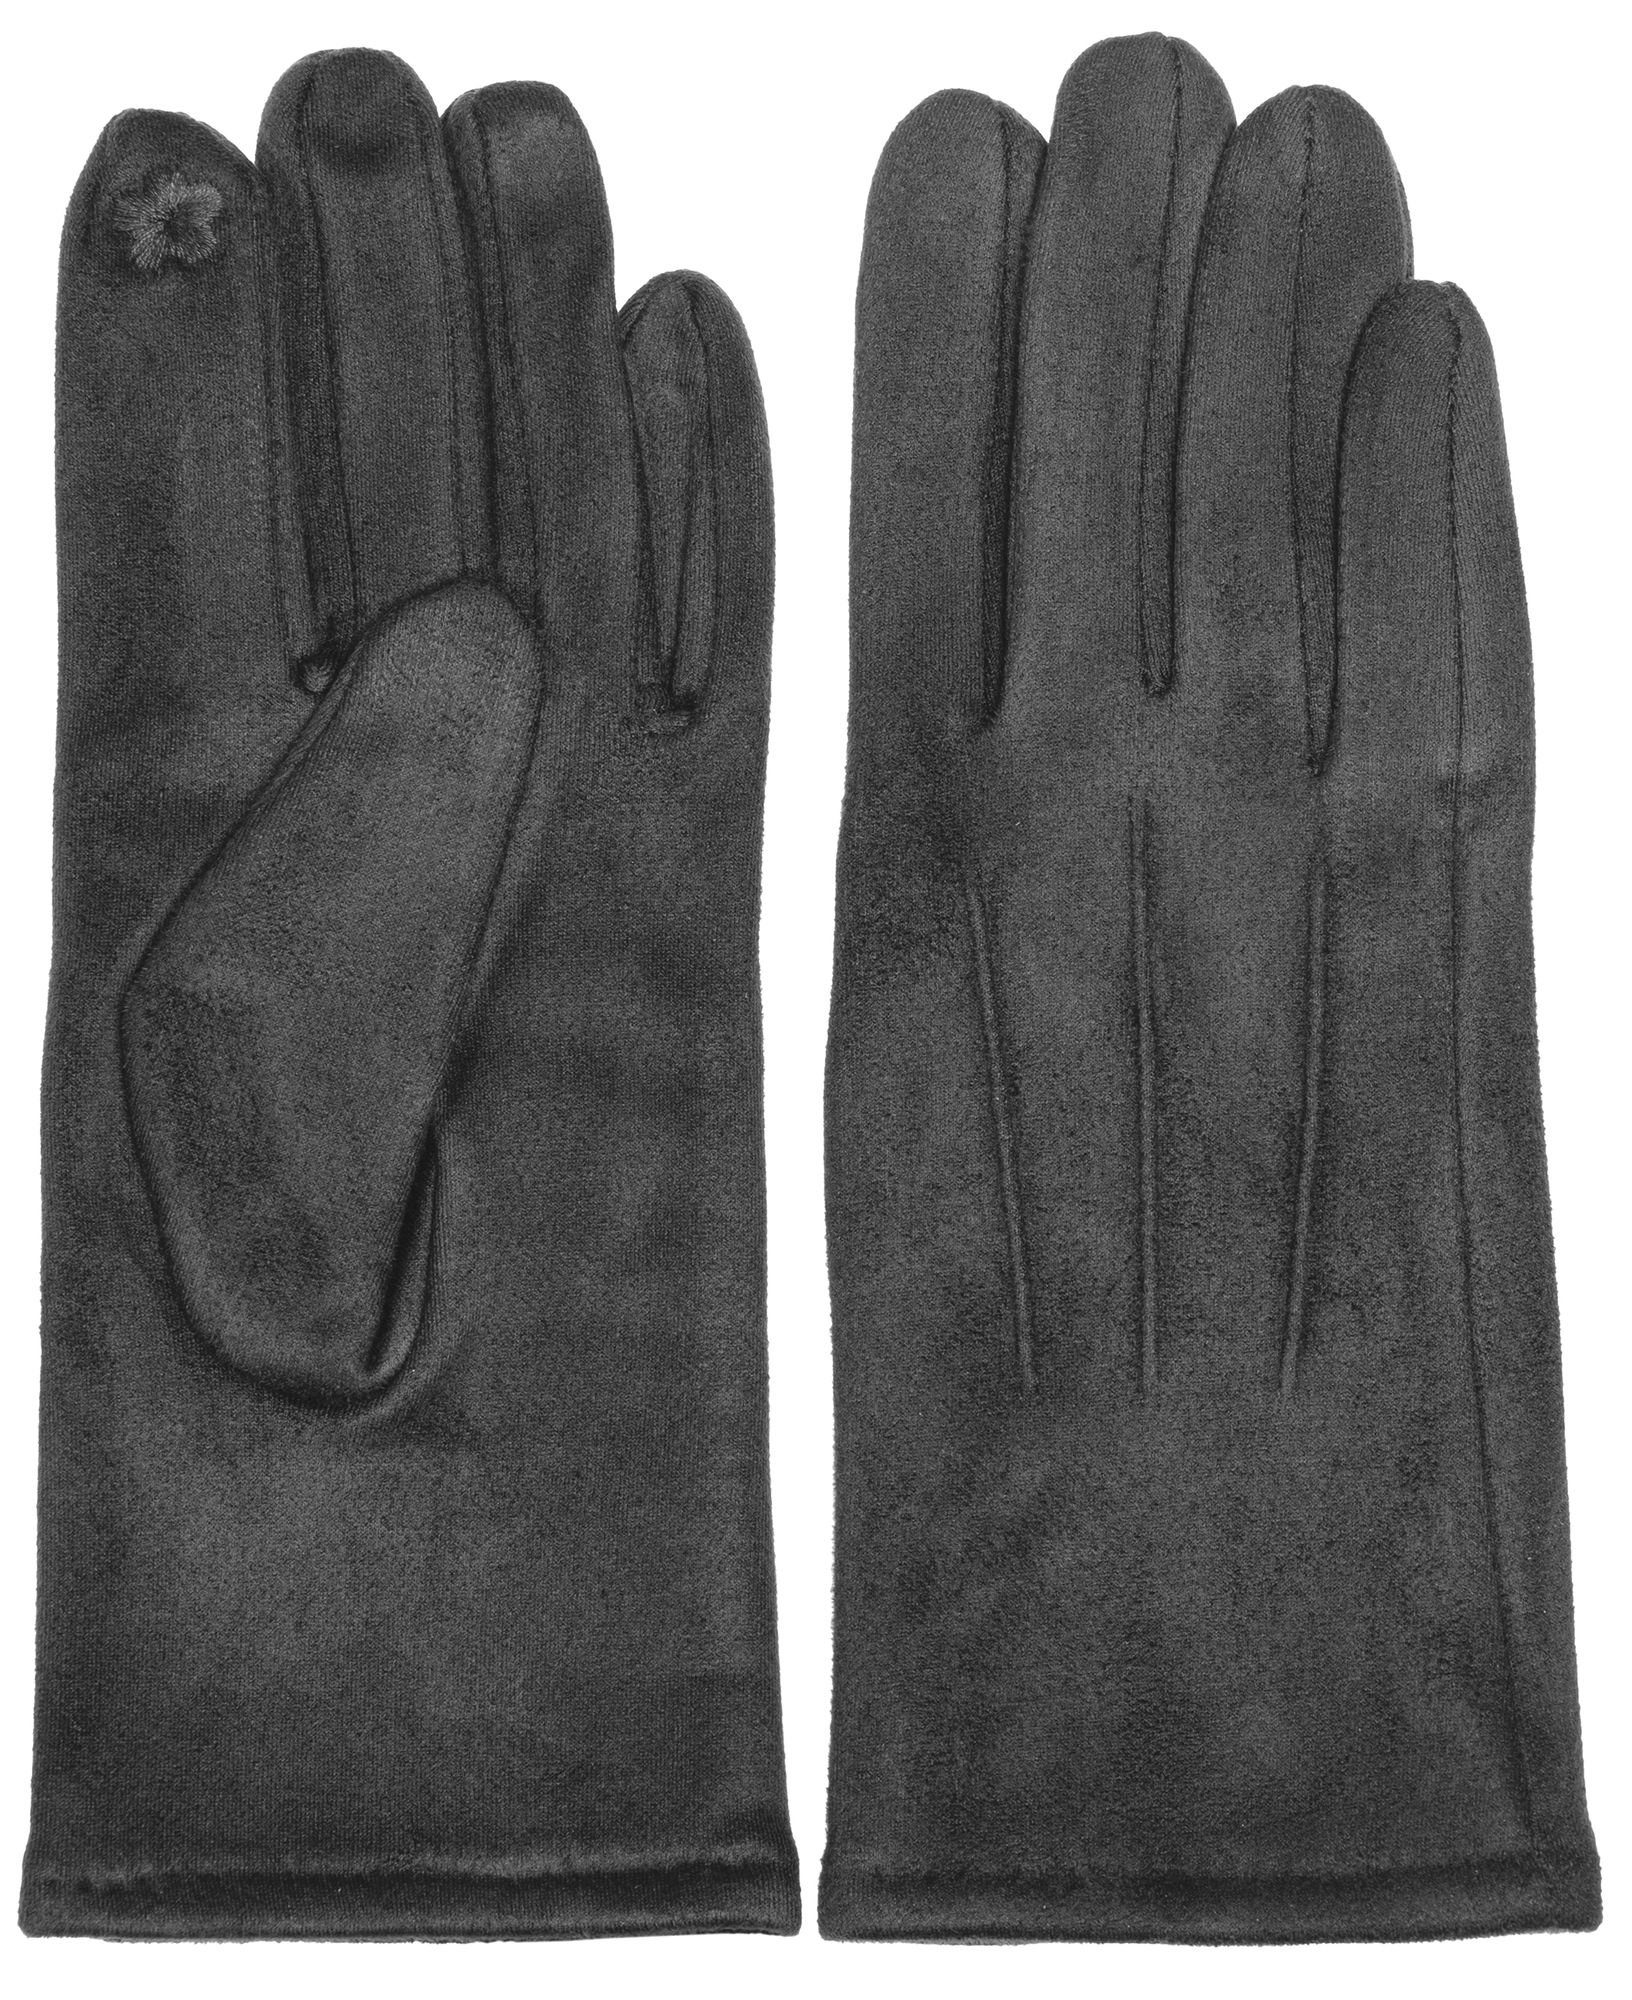 Caspar Strickhandschuhe GLV014 klassisch elegante uni Damen Handschuhe mit 3 Nähten dunkelgrau